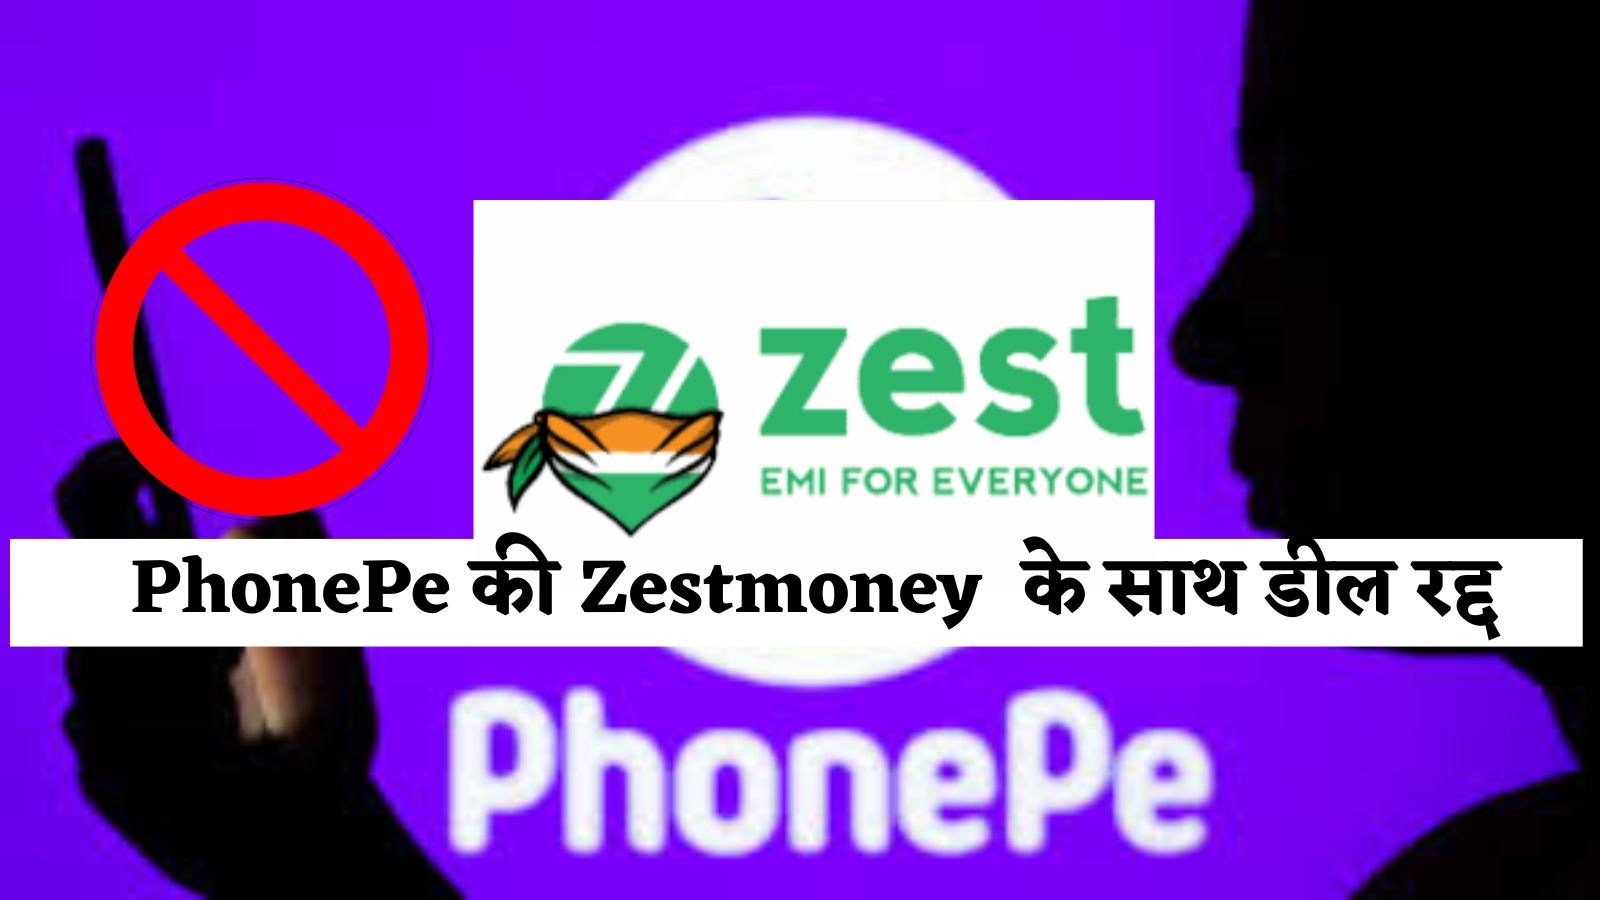 PhonePe की Zestmoney  के साथ डील रद्द, जानें पूरी खबर